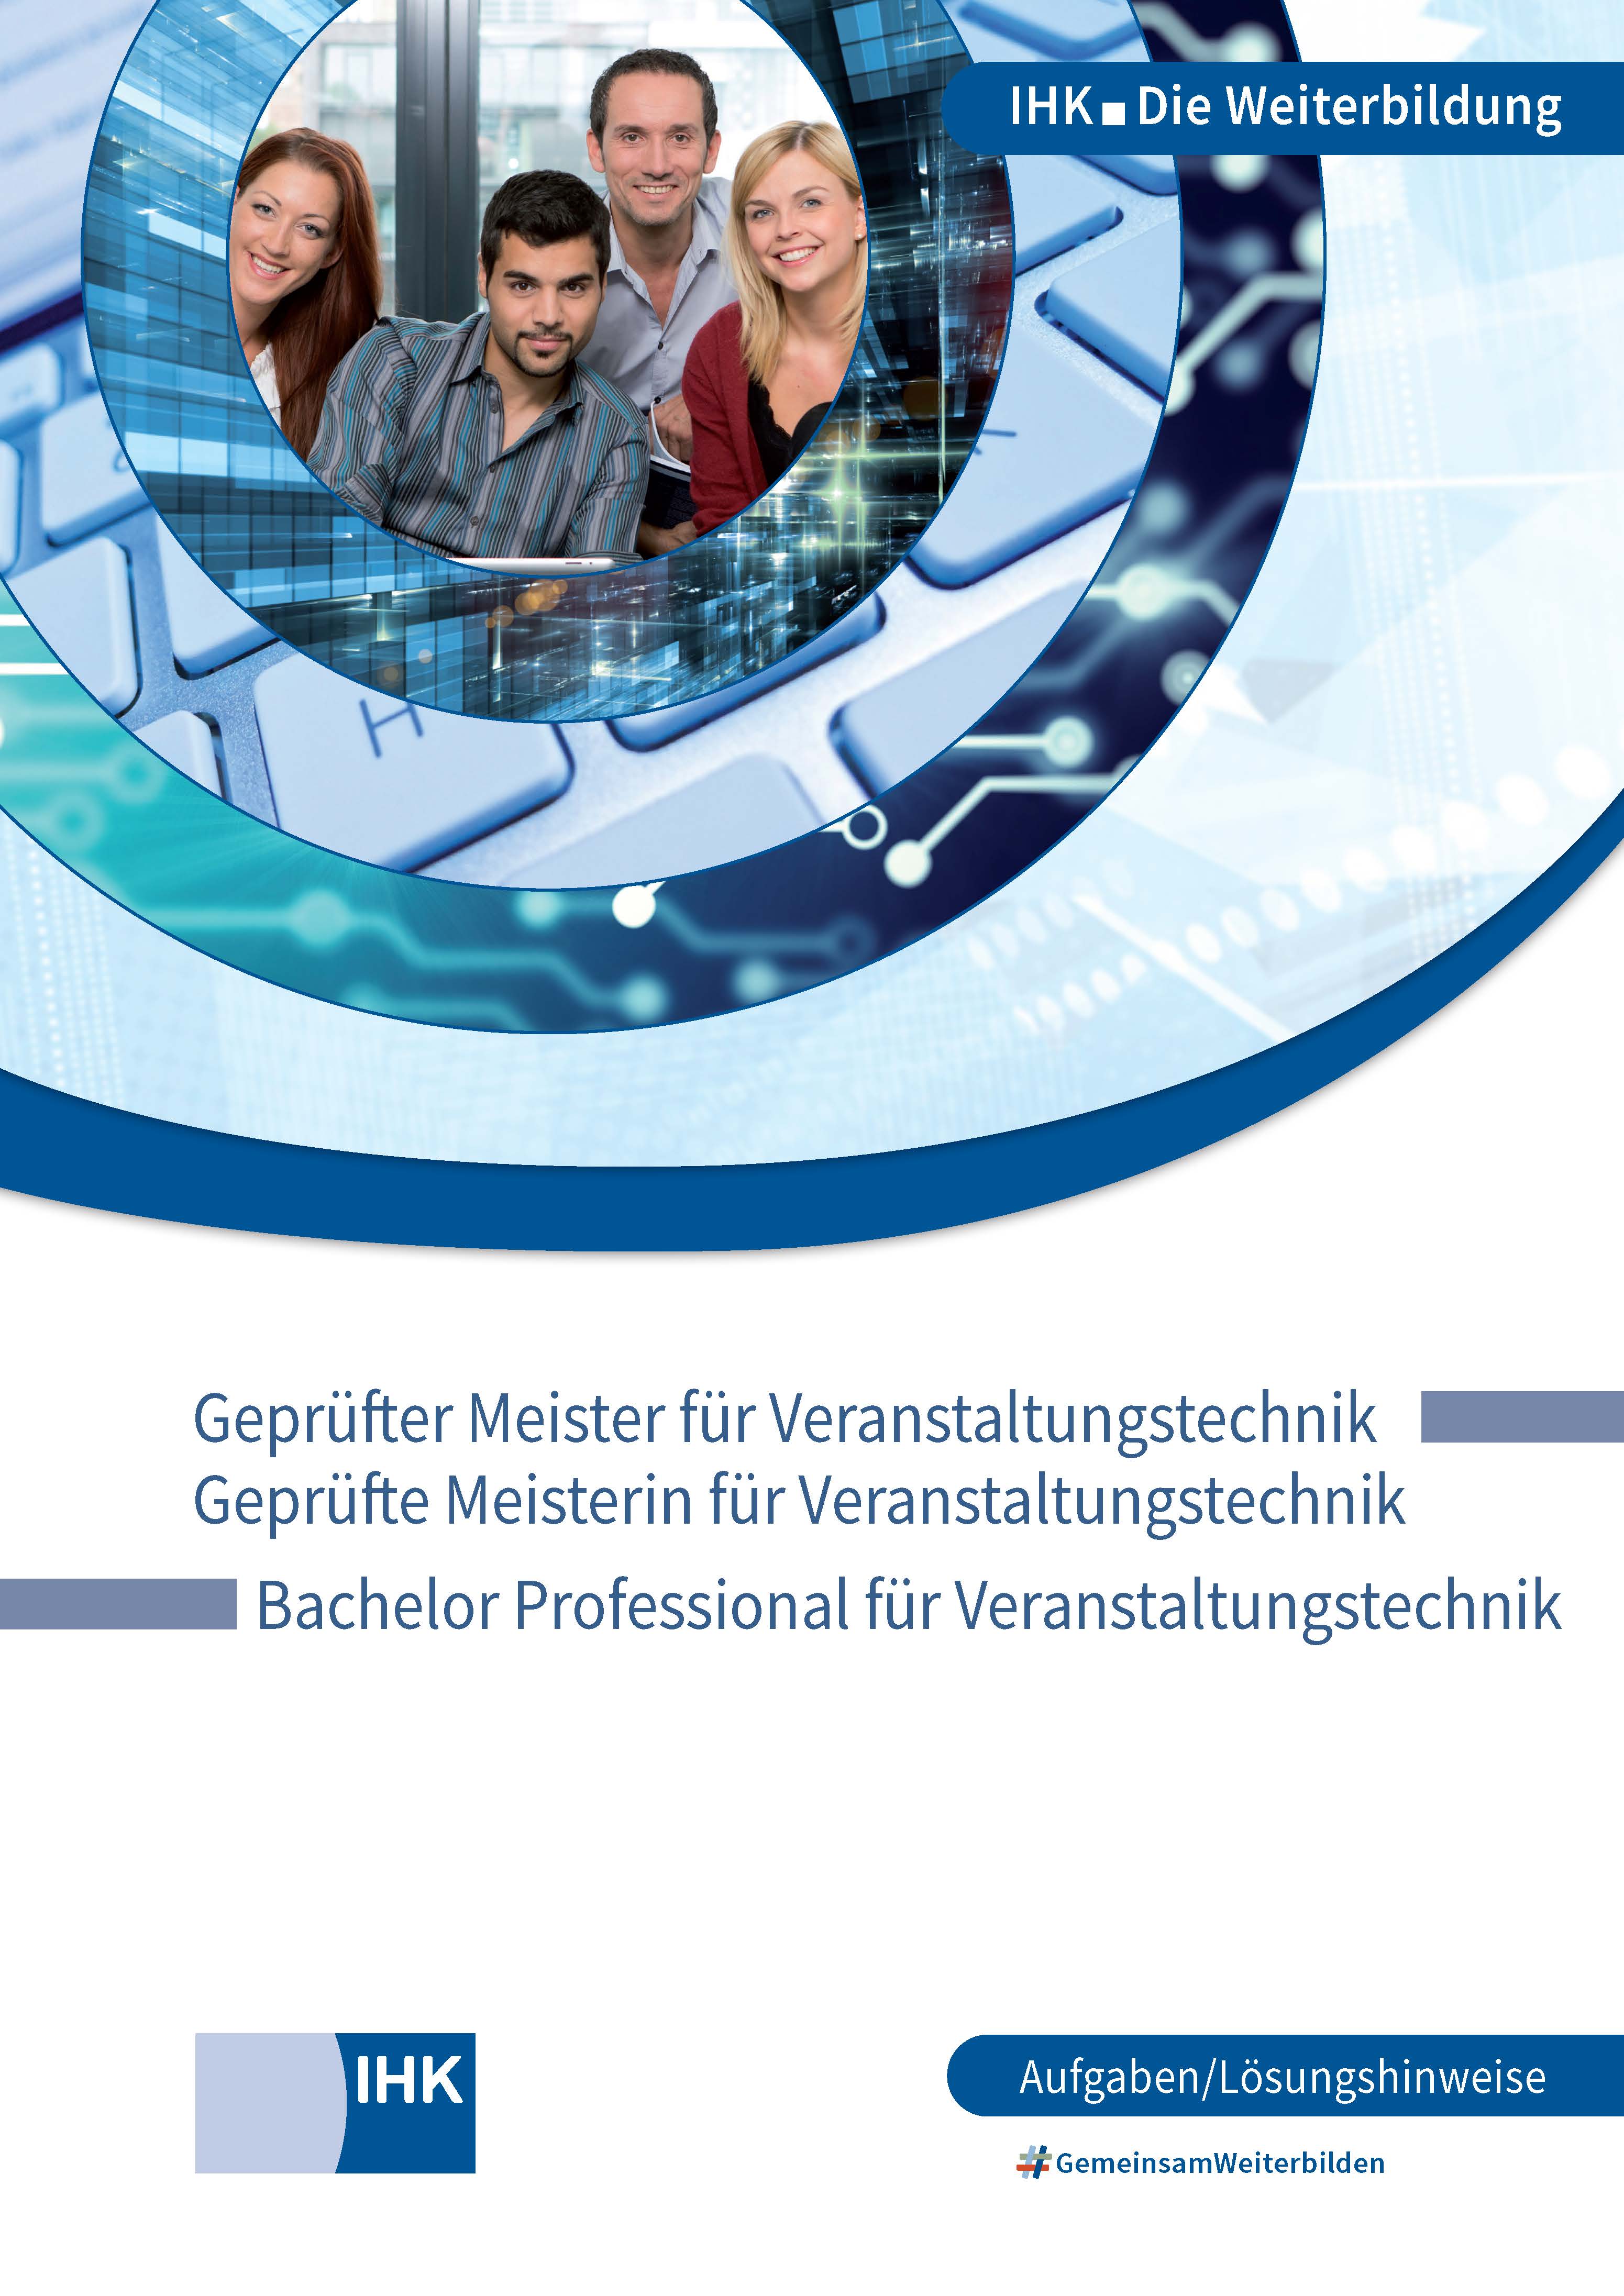 Geprüfte Meister für Veranstaltungstechnik  – Bachelor Professional für Veranstaltungstechnik